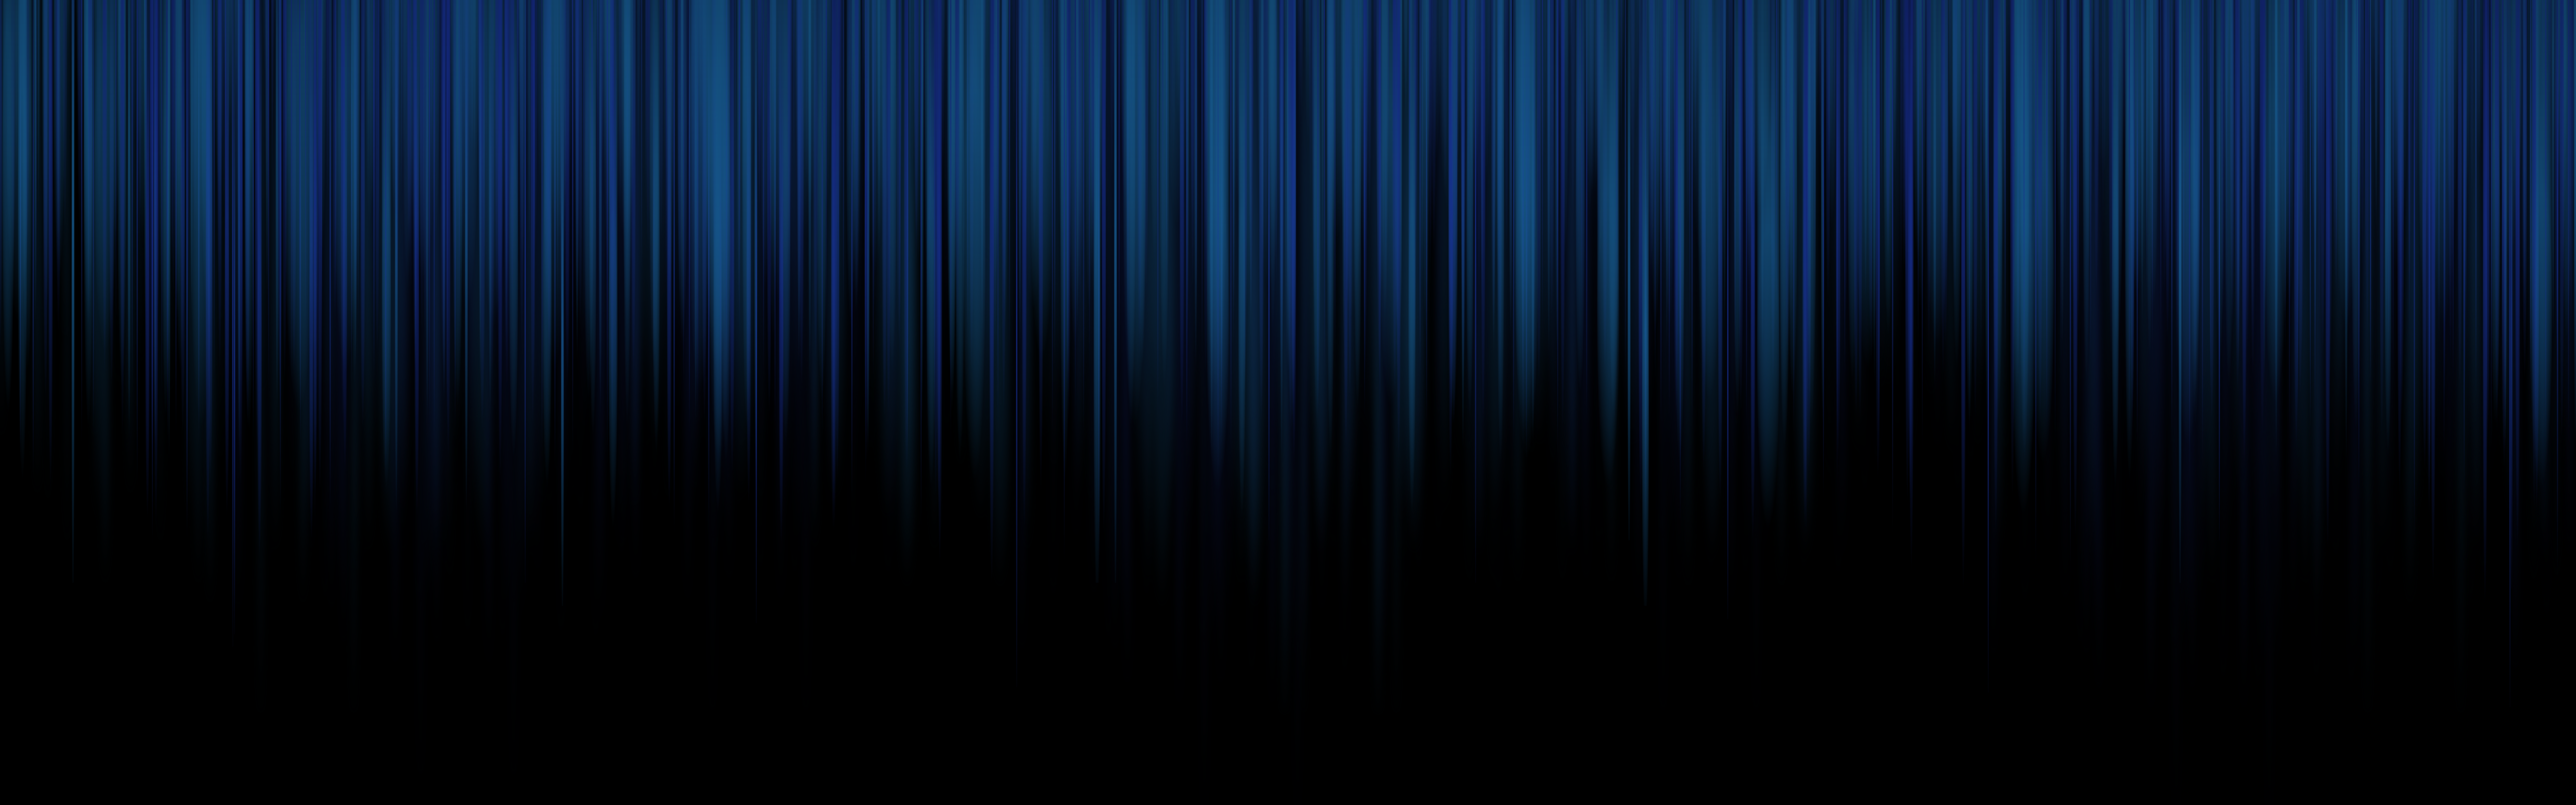 Full HD Wallpaper Background Blue Dual Screen By Dan Wiersema